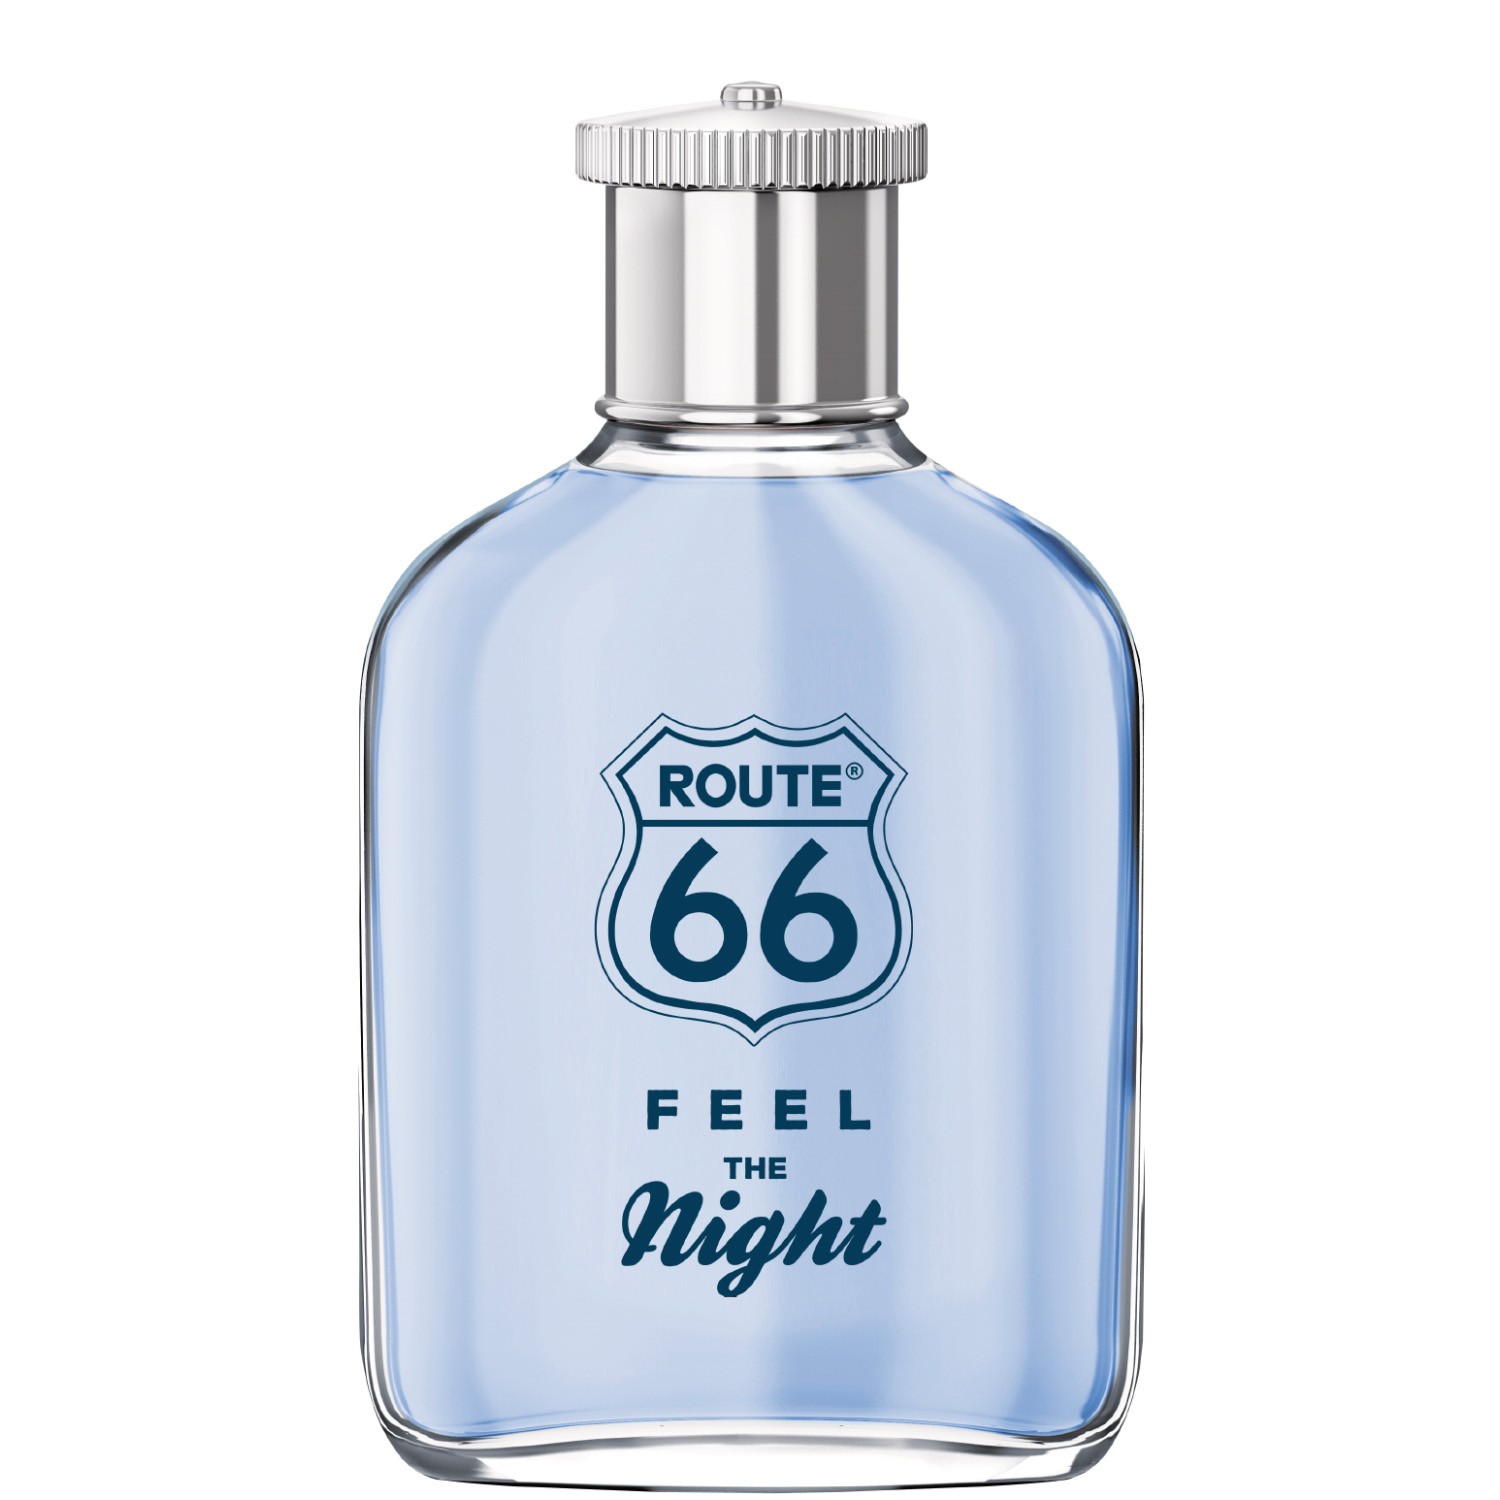 Route 66 Feel the Night Eau de Toilette 100ml